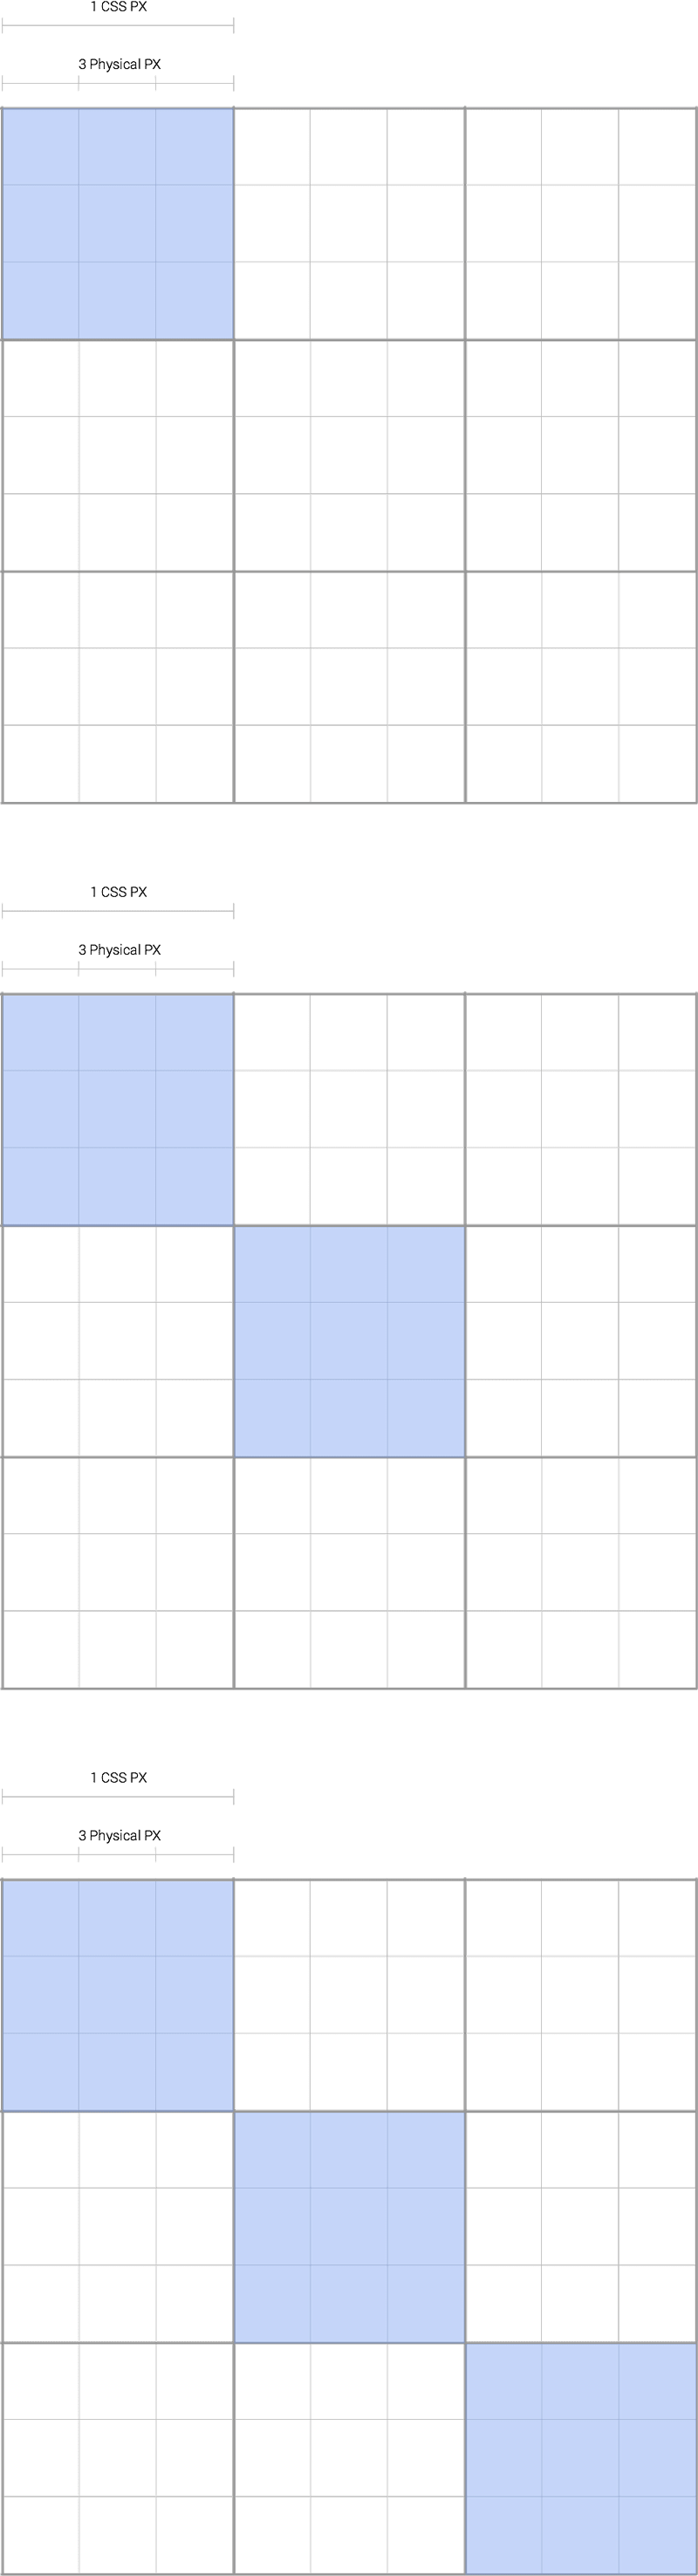 Precisione del pixel CSS durante il gesto.